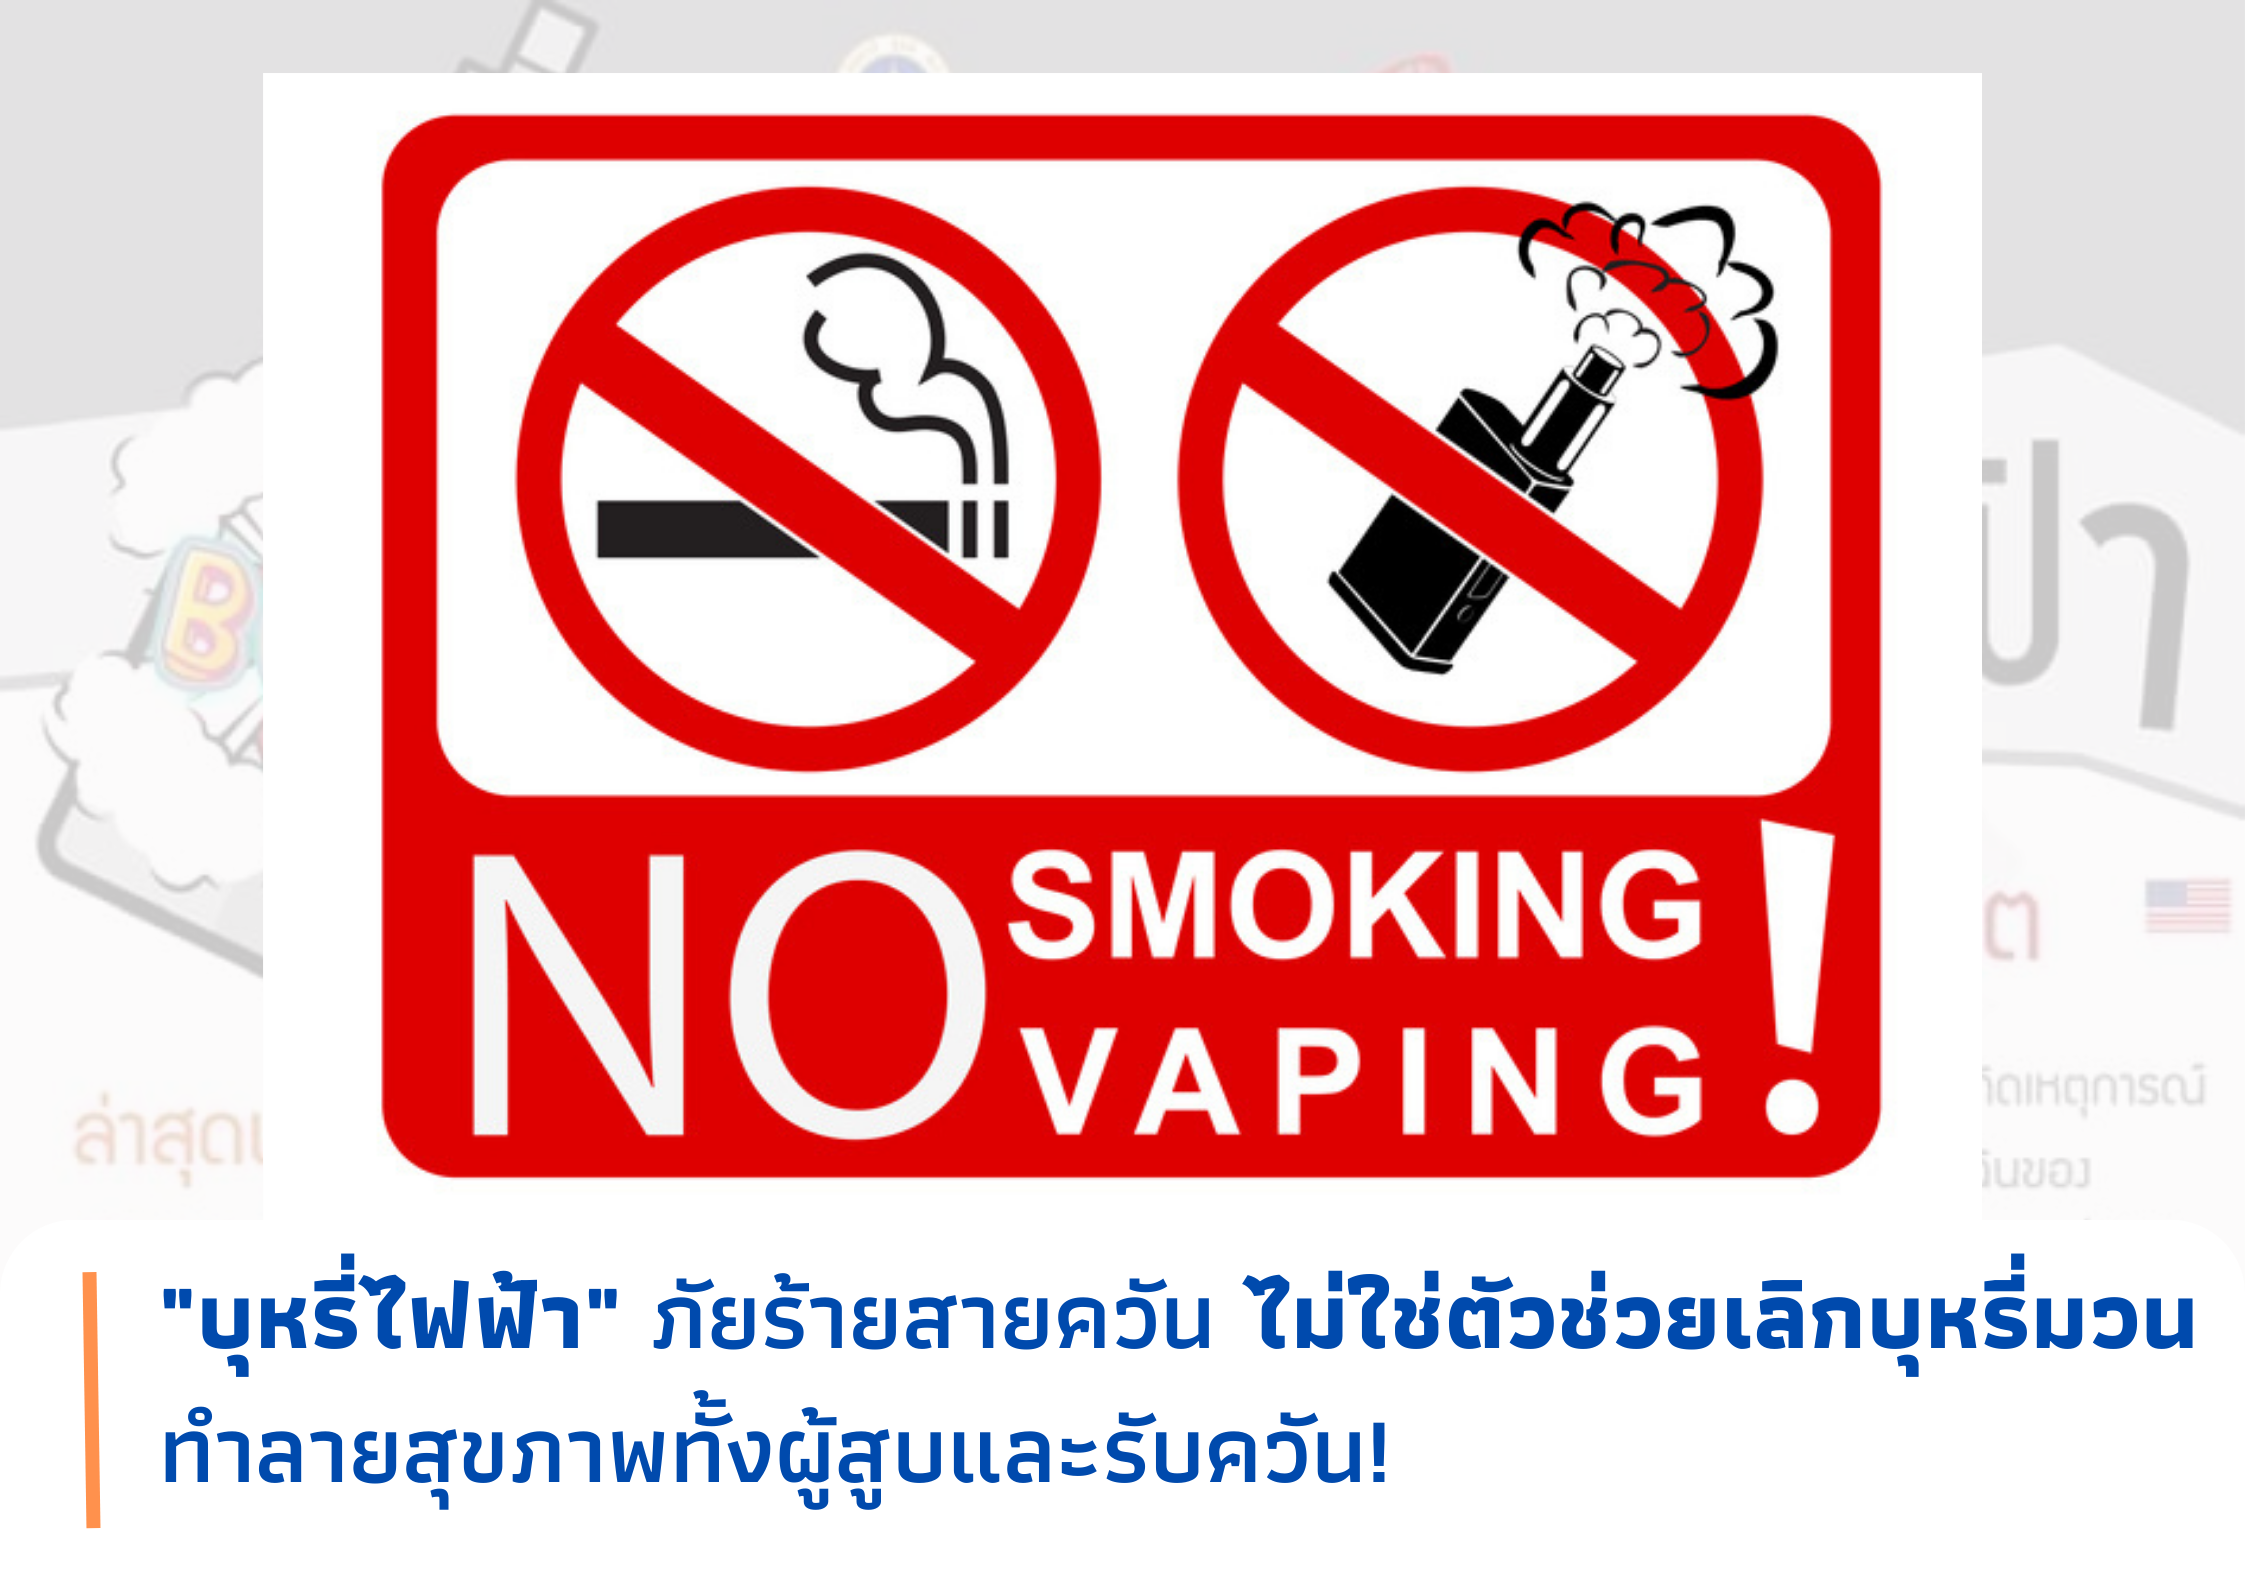 บุหรี่ไฟฟ้า ภัยร้ายสายควัน ไม่ใช่ตัวช่วยเลิกบุหรี่มวน ทำลายสุขภาพทั้งผู้สูบและรับควัน